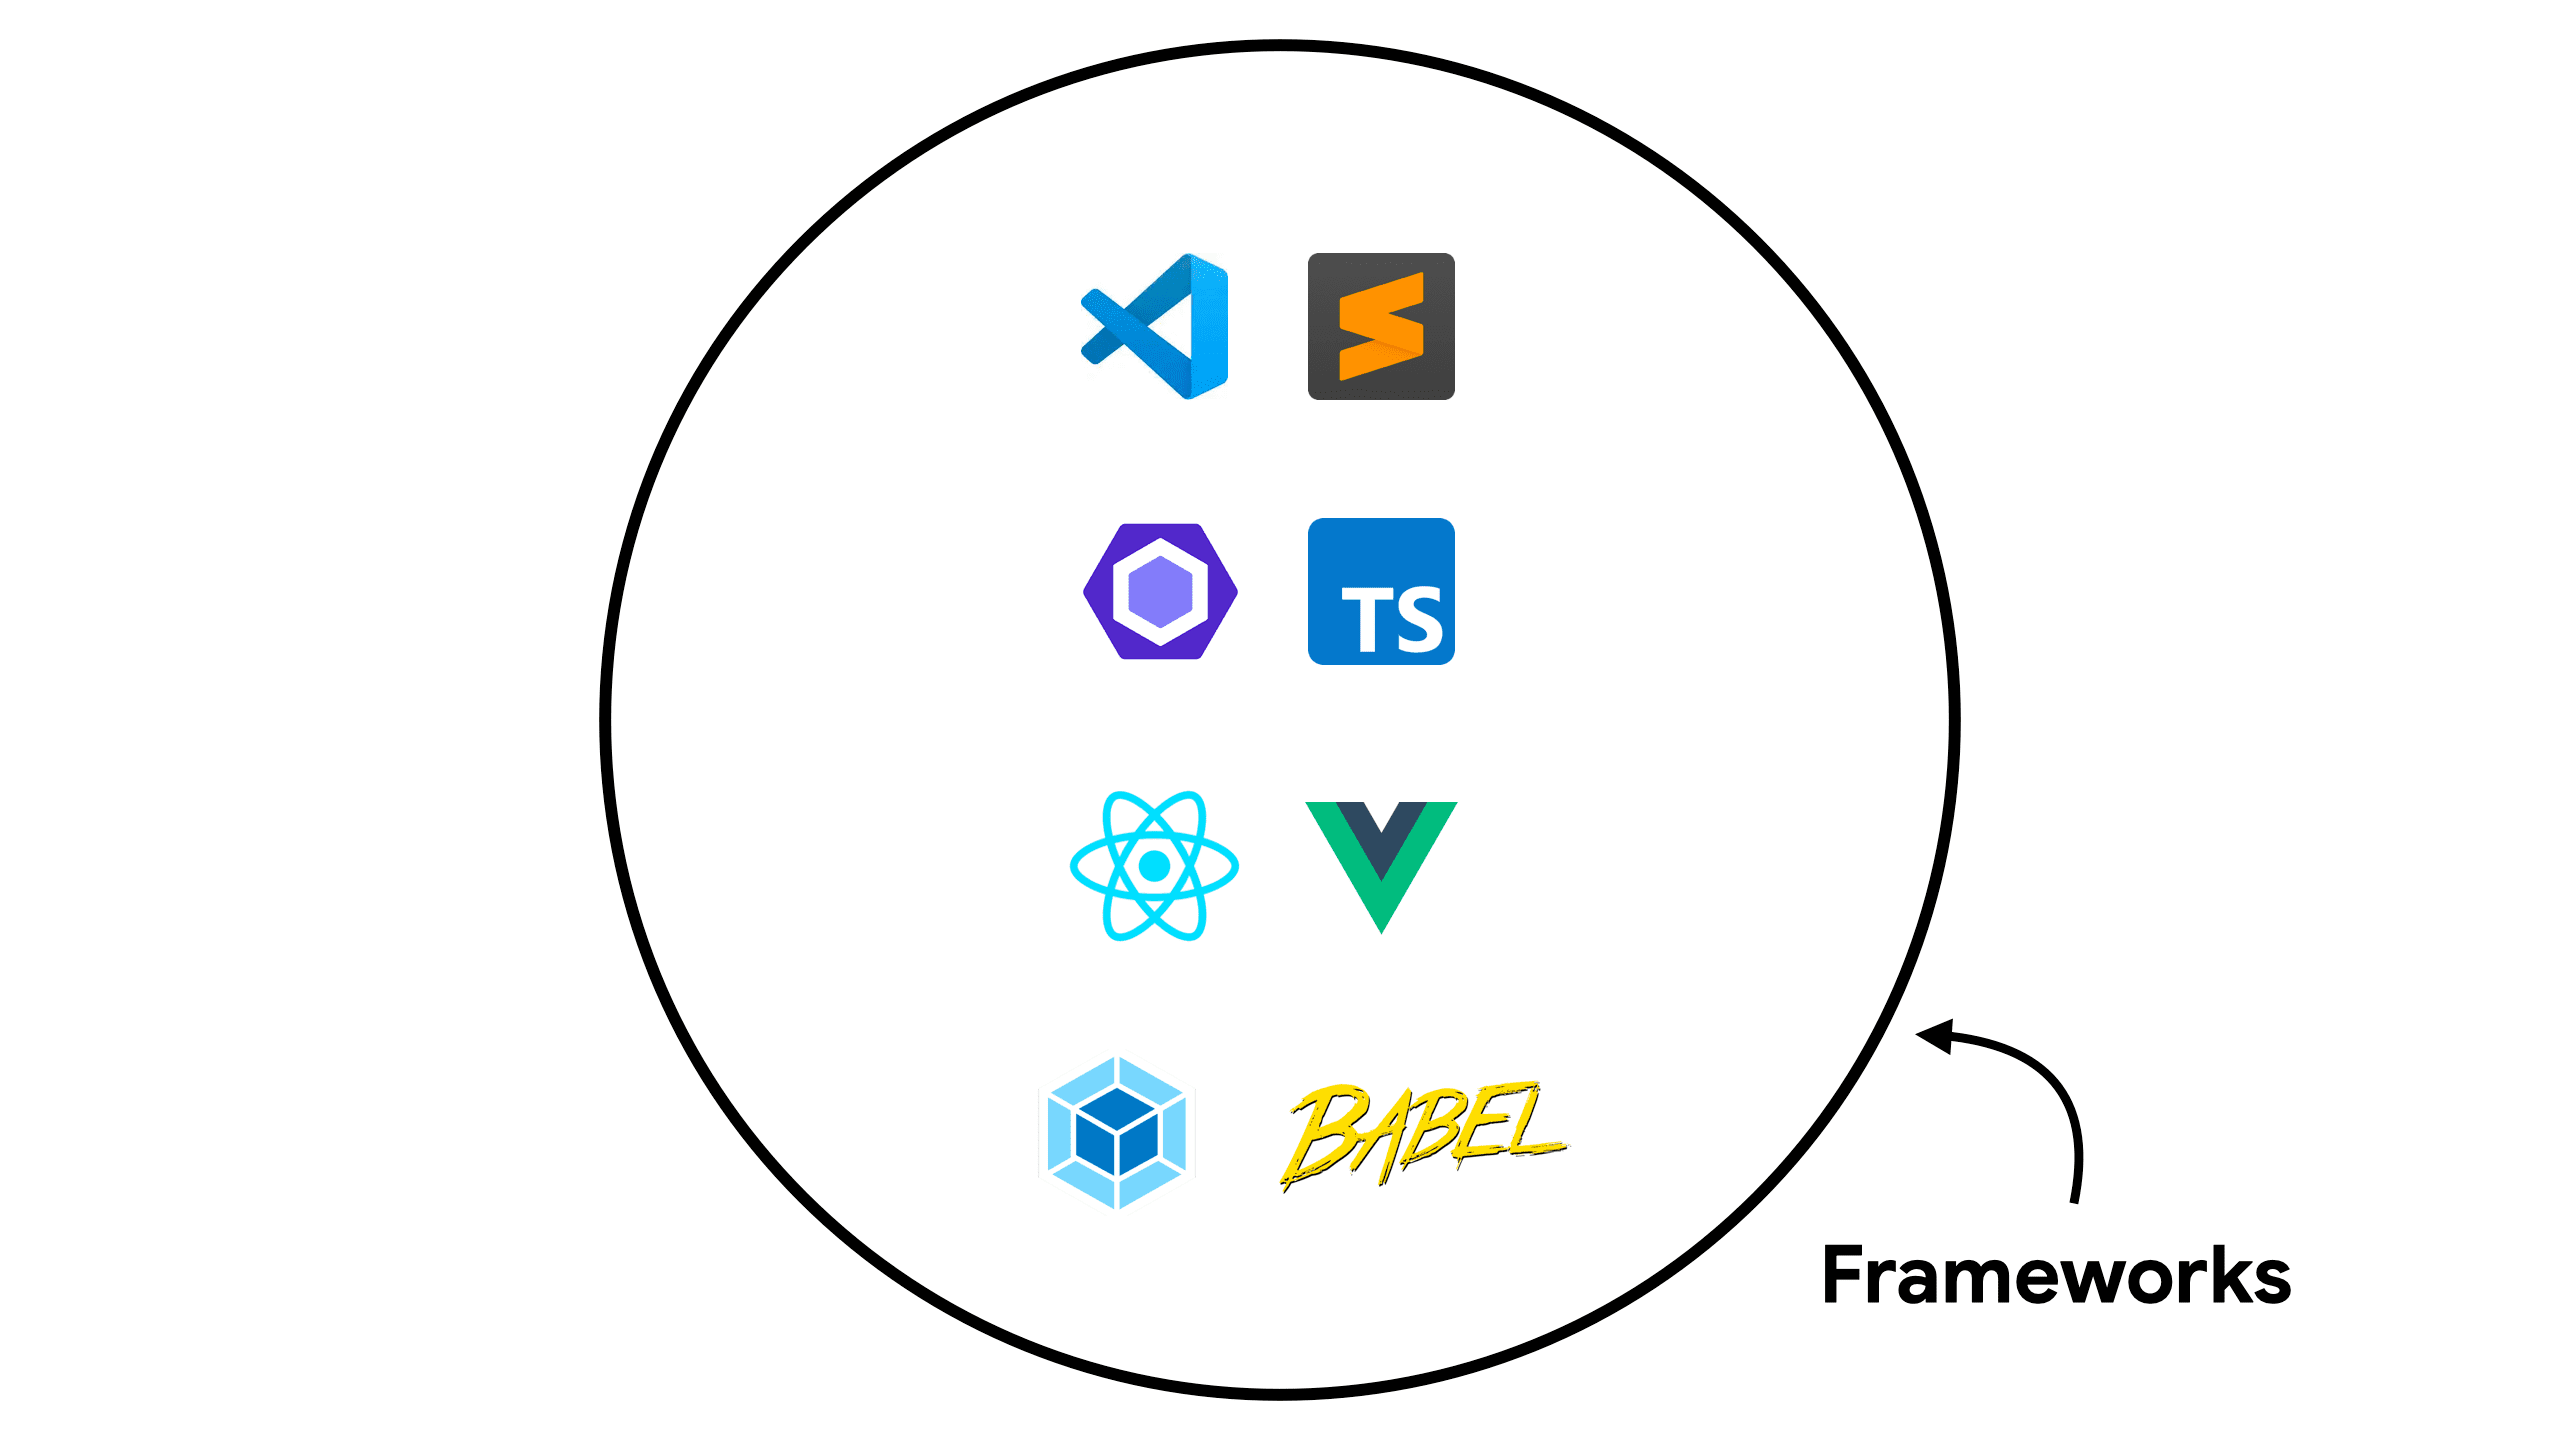 Gráfico en el que se muestran herramientas
 comunes en frameworks